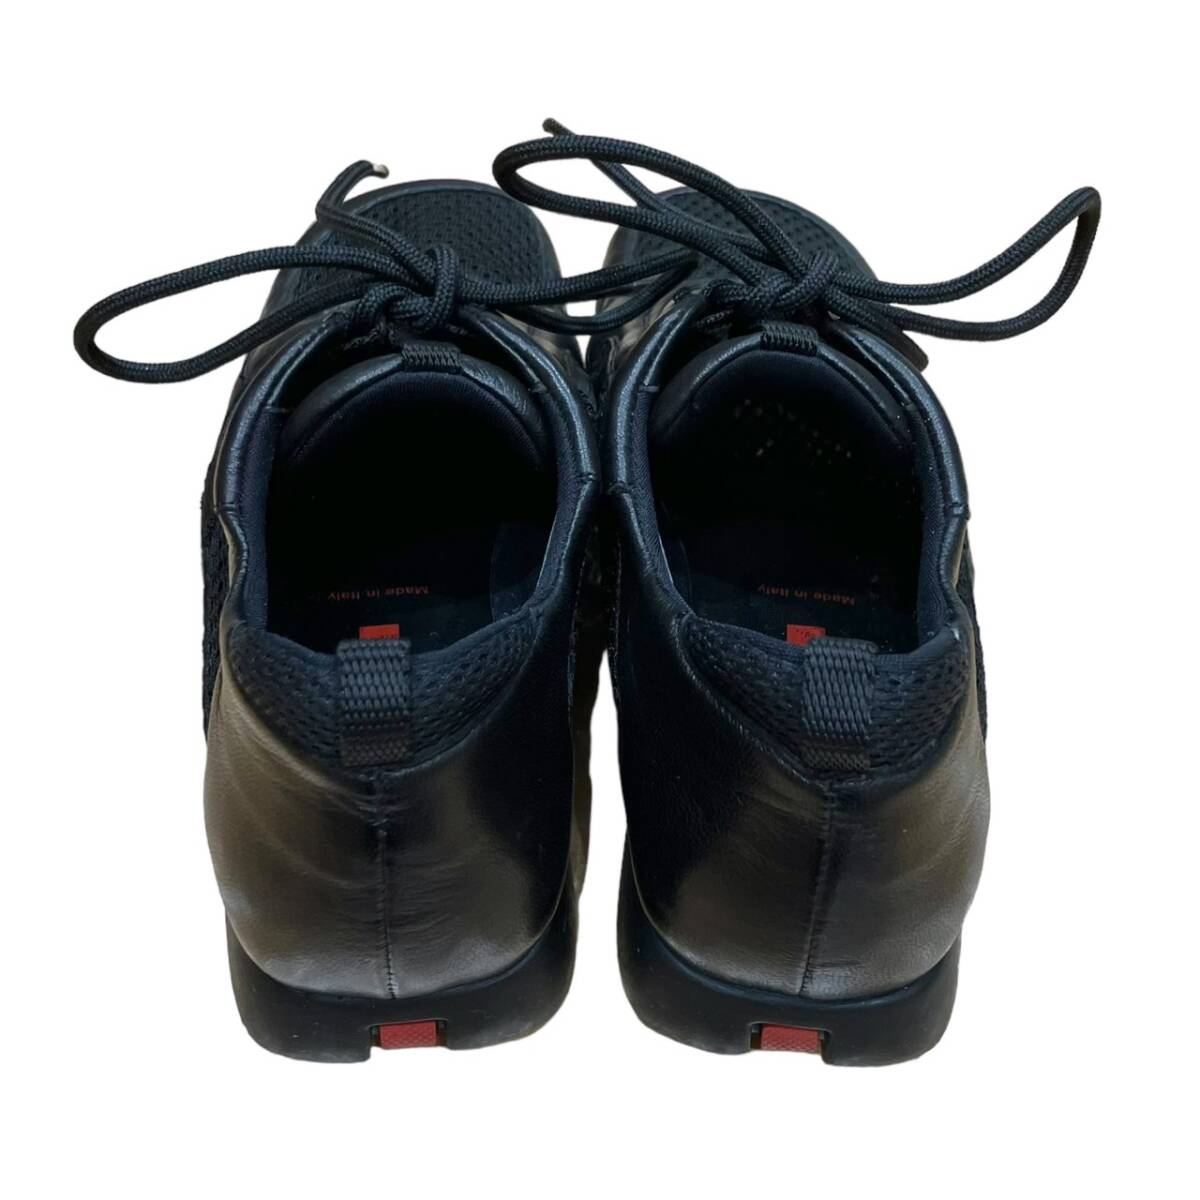 PRADA Prada Prada спорт сетка туфли без застежки спортивные туфли черный 